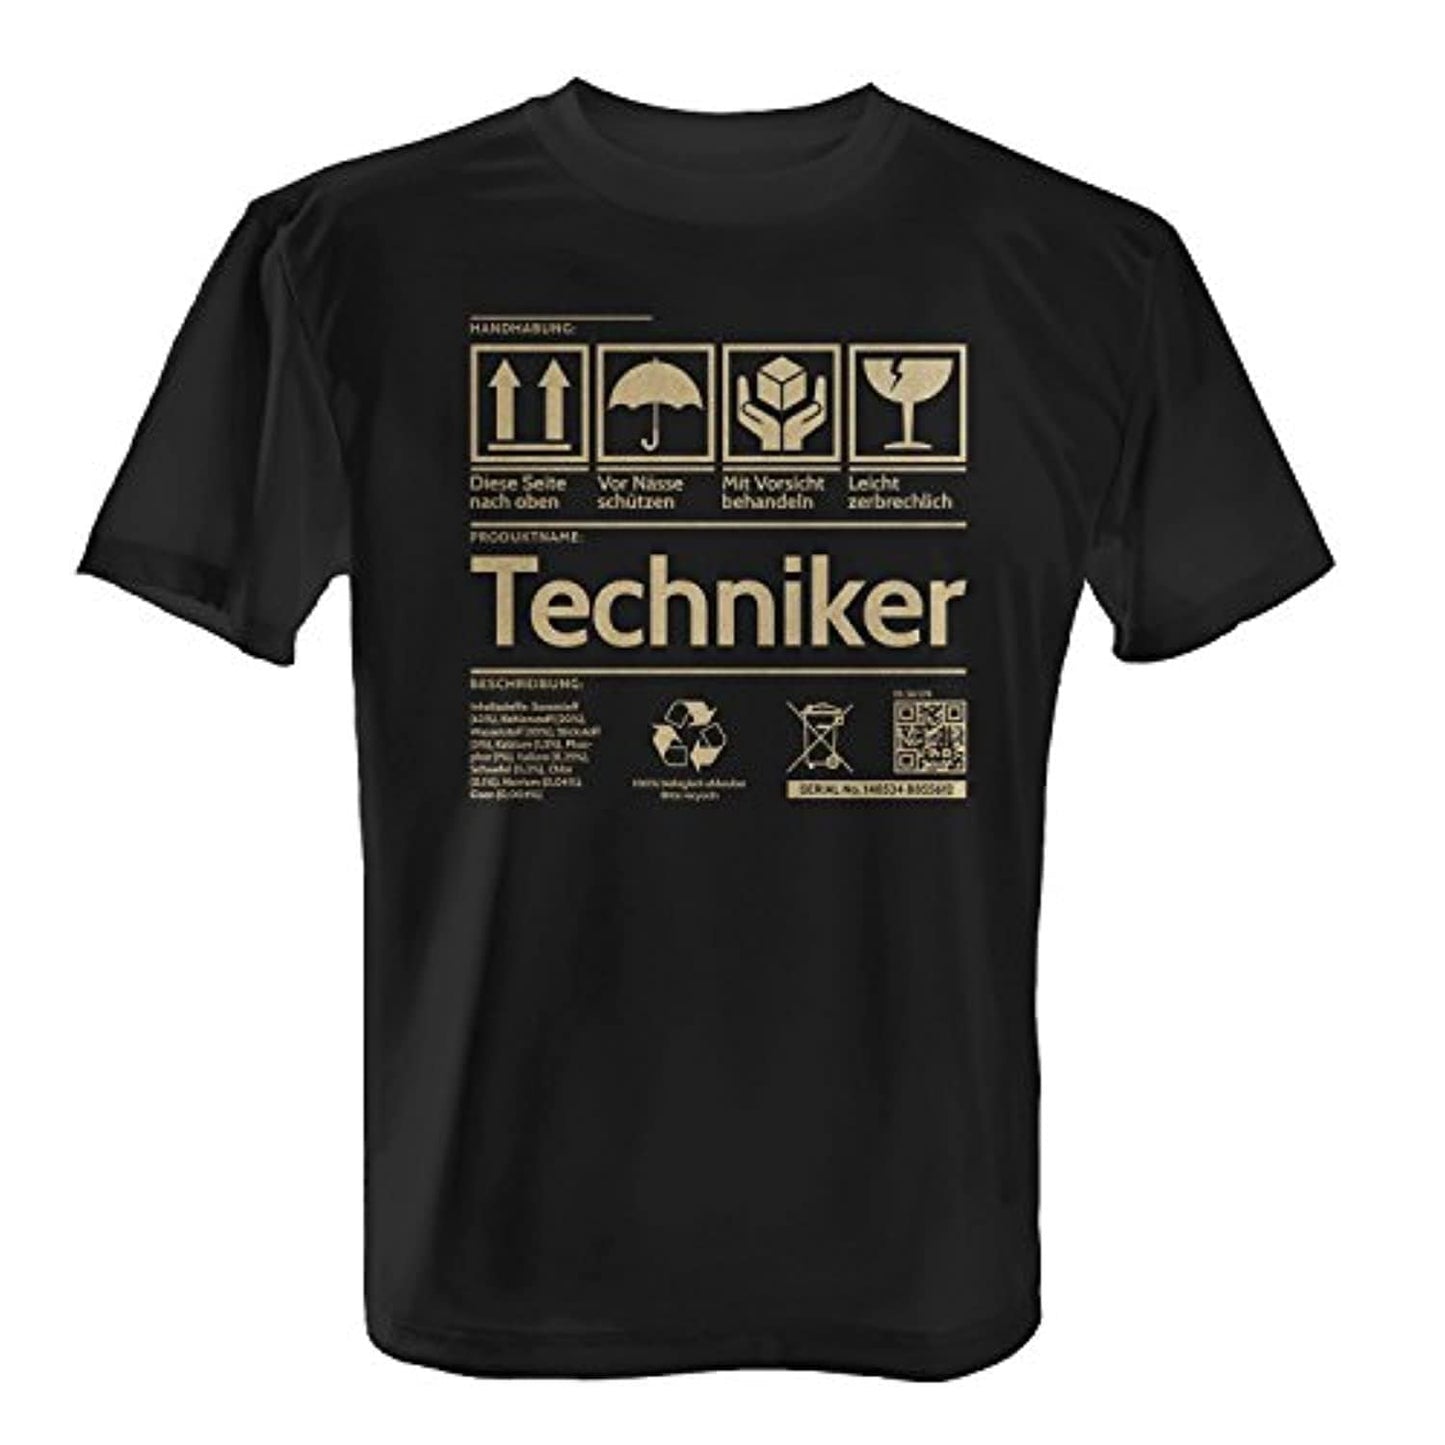 Fashionalarm T-Shirt Homme - Étiquette - Techniker Fun Shirt Geschenk Tee 